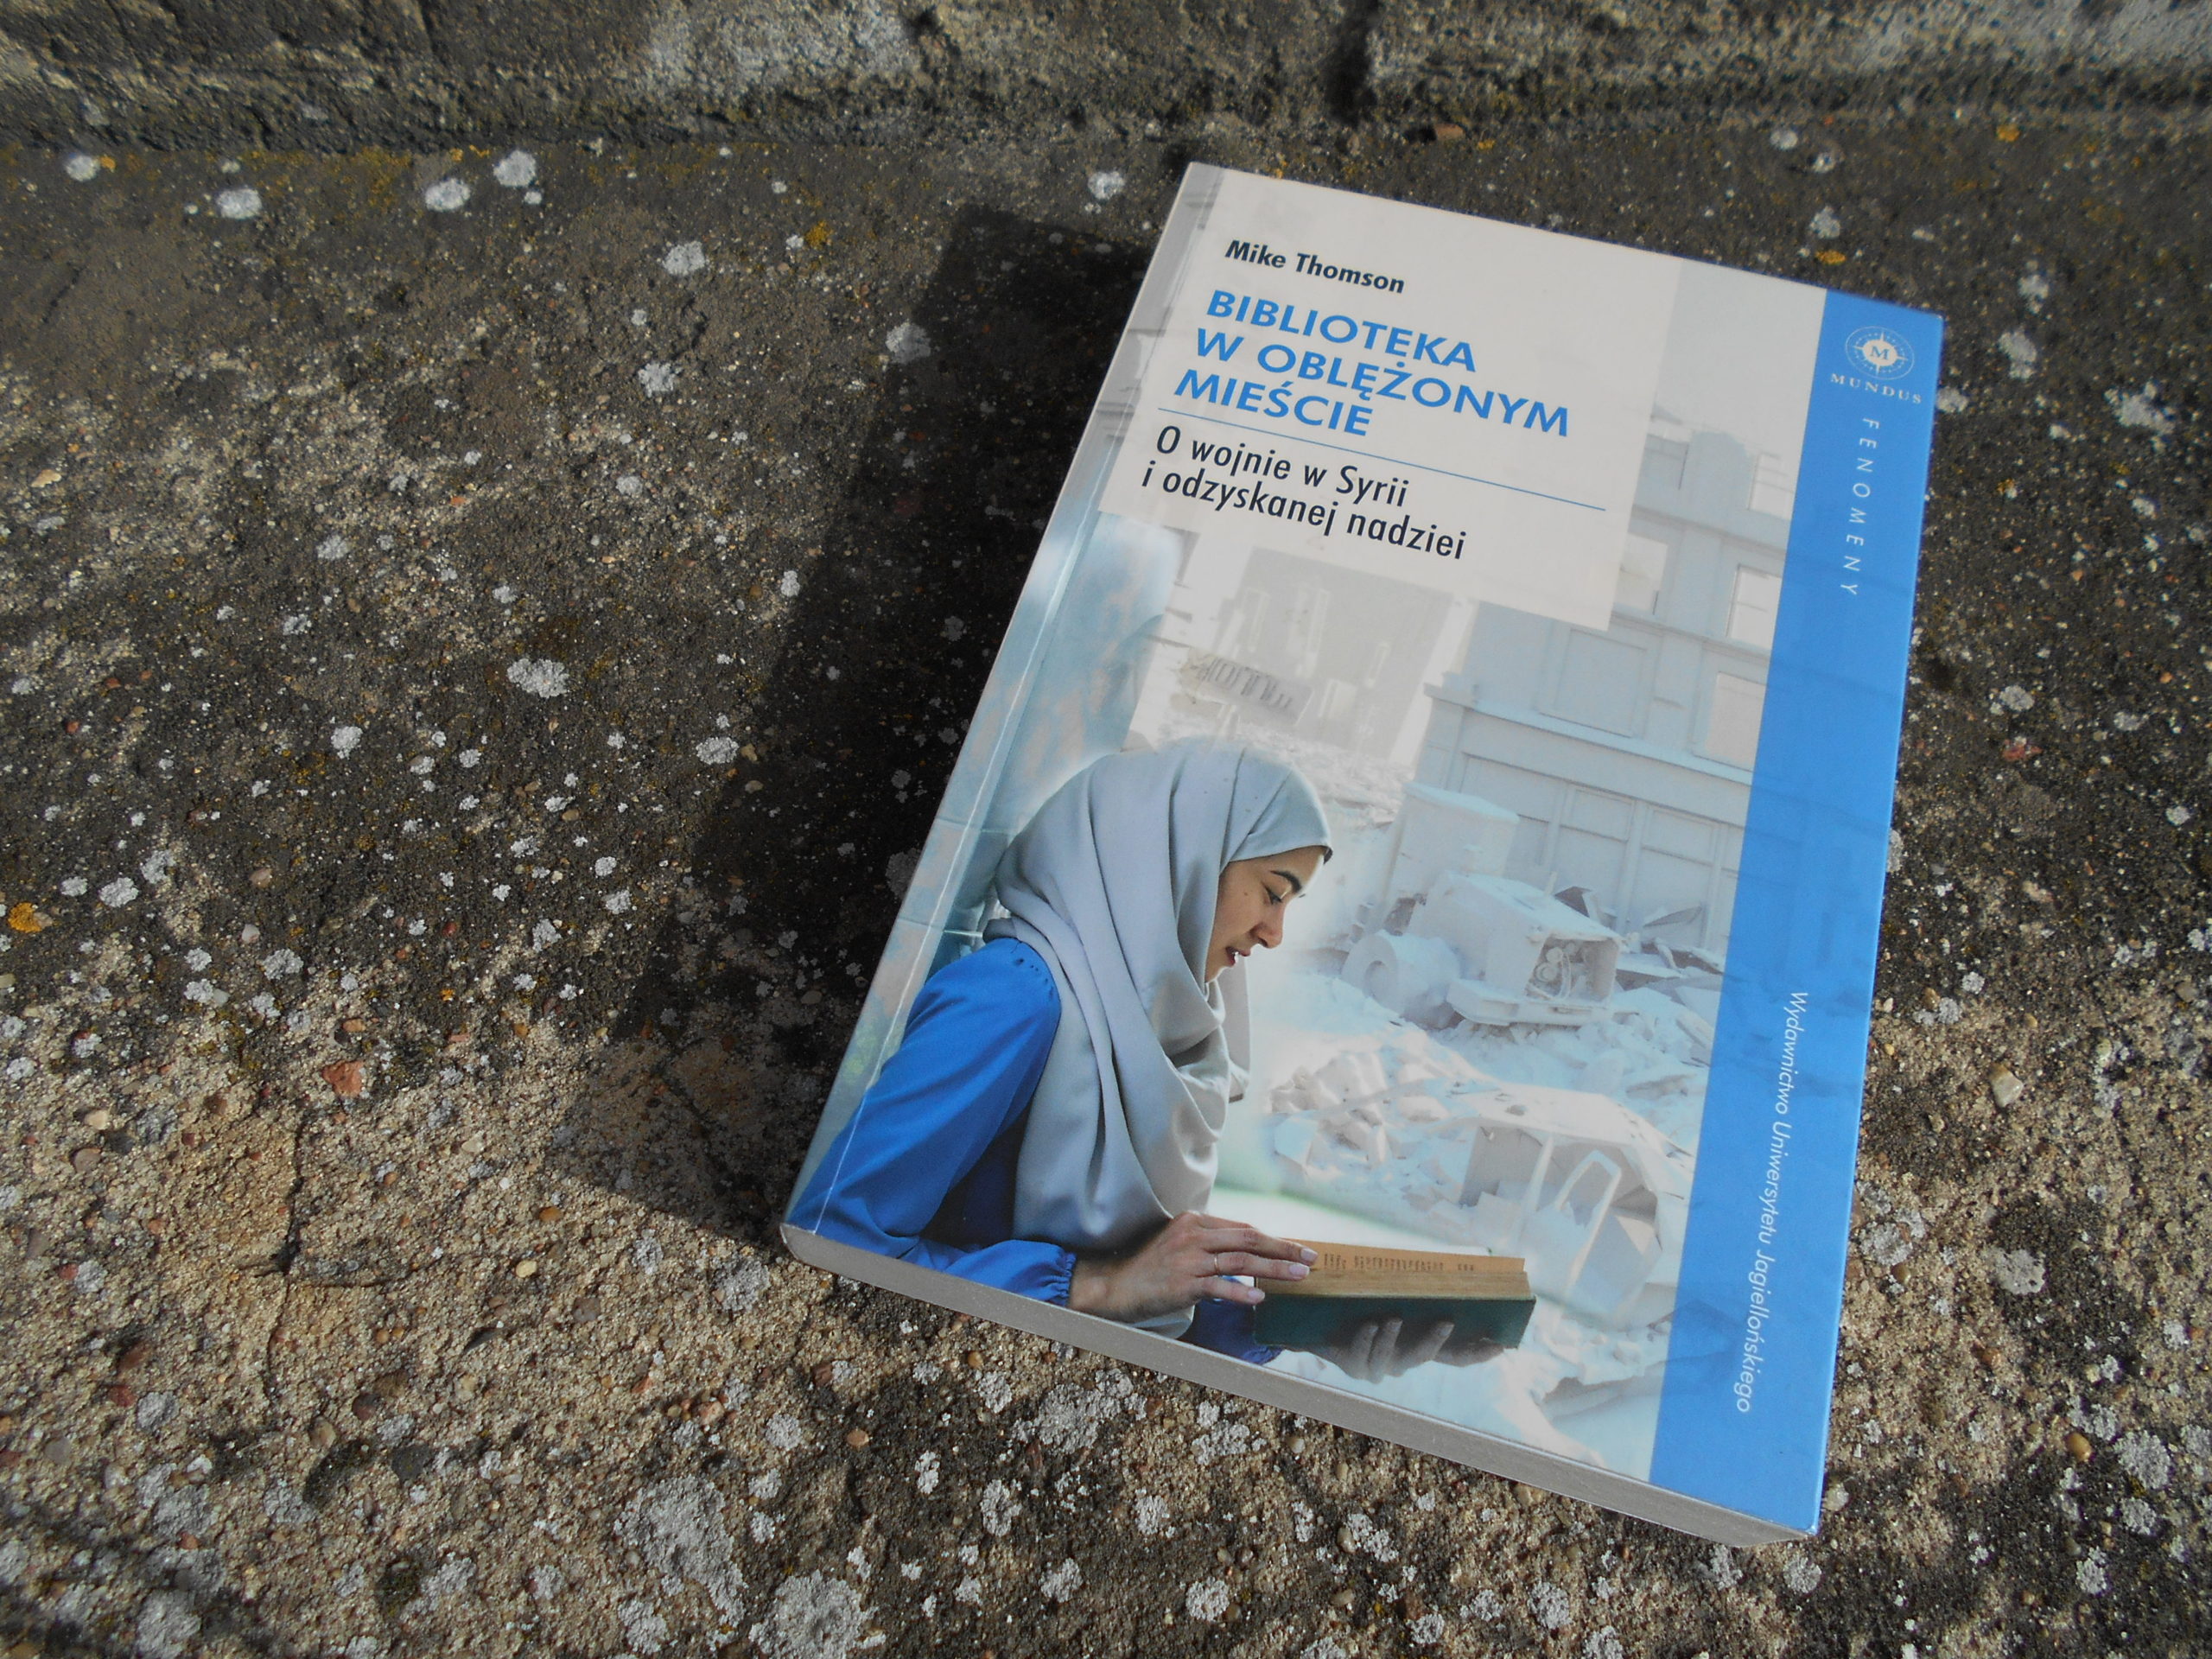 zdjęcie przedstawiające szaro-niebieską książkę "Biblioteka w oblężonym mieście. O wojnie w Syrii i odzyskanej nadziei", leżącą na chodniku